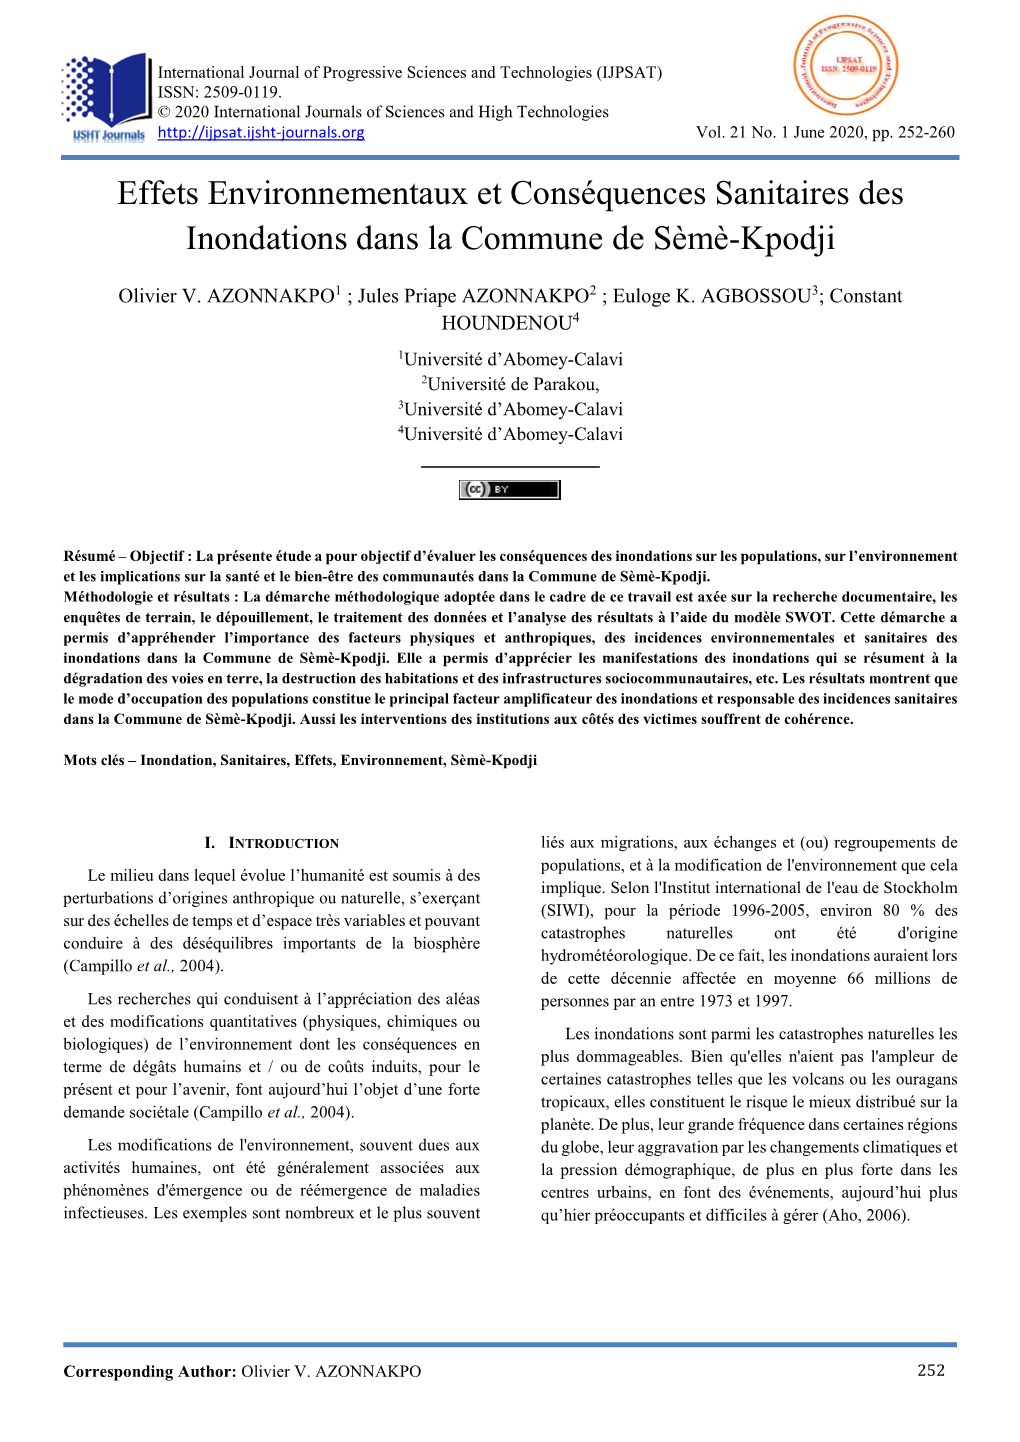 Effets Environnementaux Et Conséquences Sanitaires Des Inondations Dans La Commune De Sèmè-Kpodji